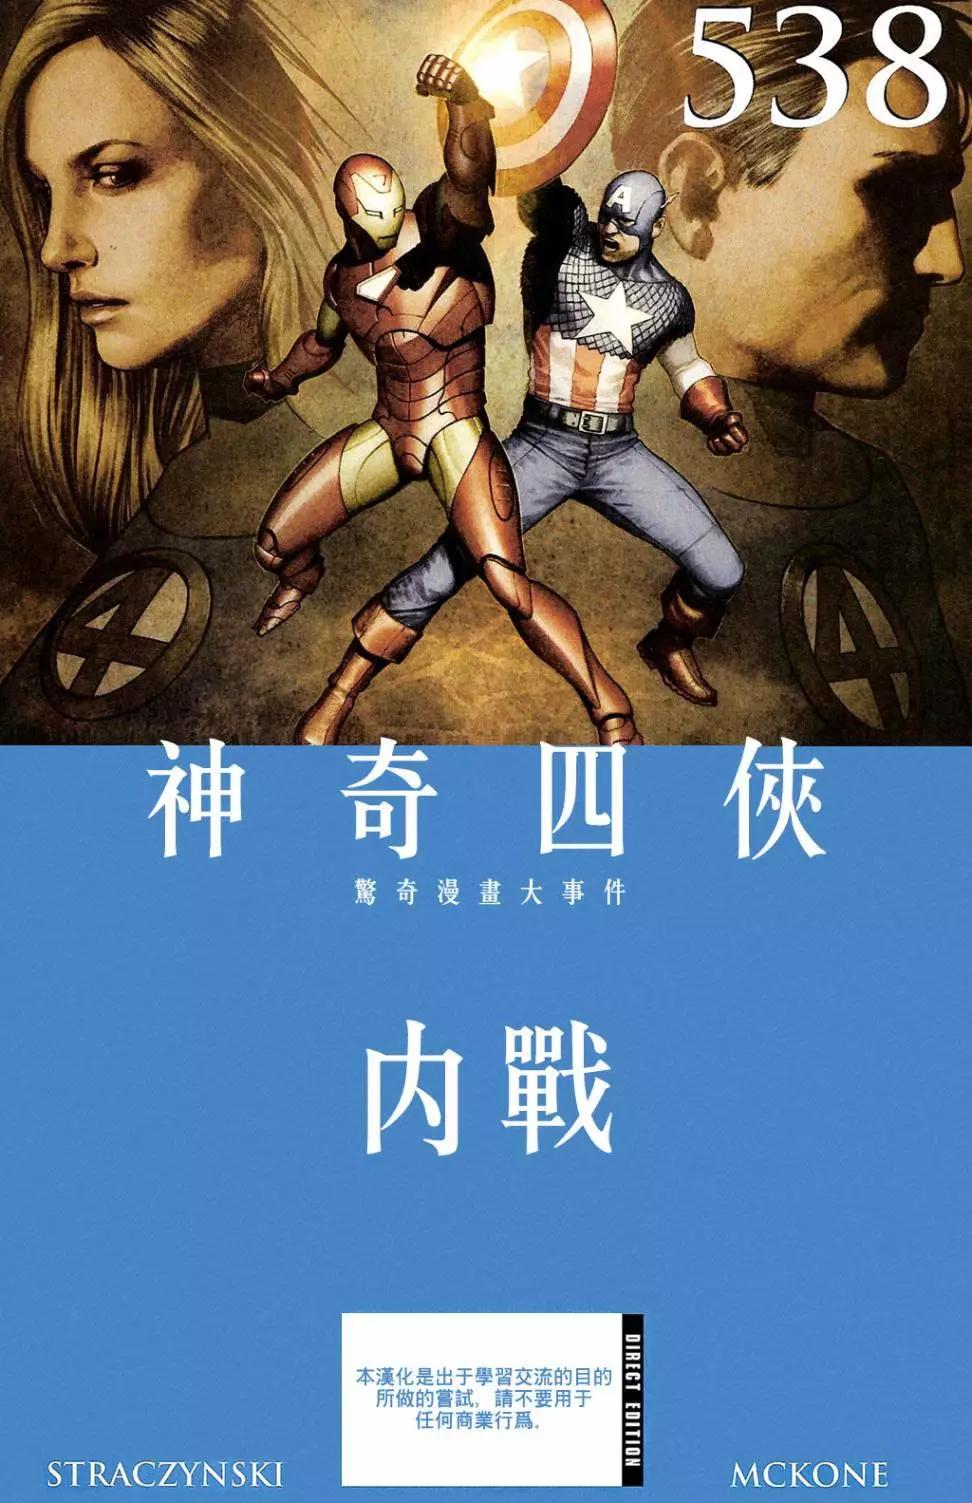 内战2006 - 神奇四侠#538 - 1